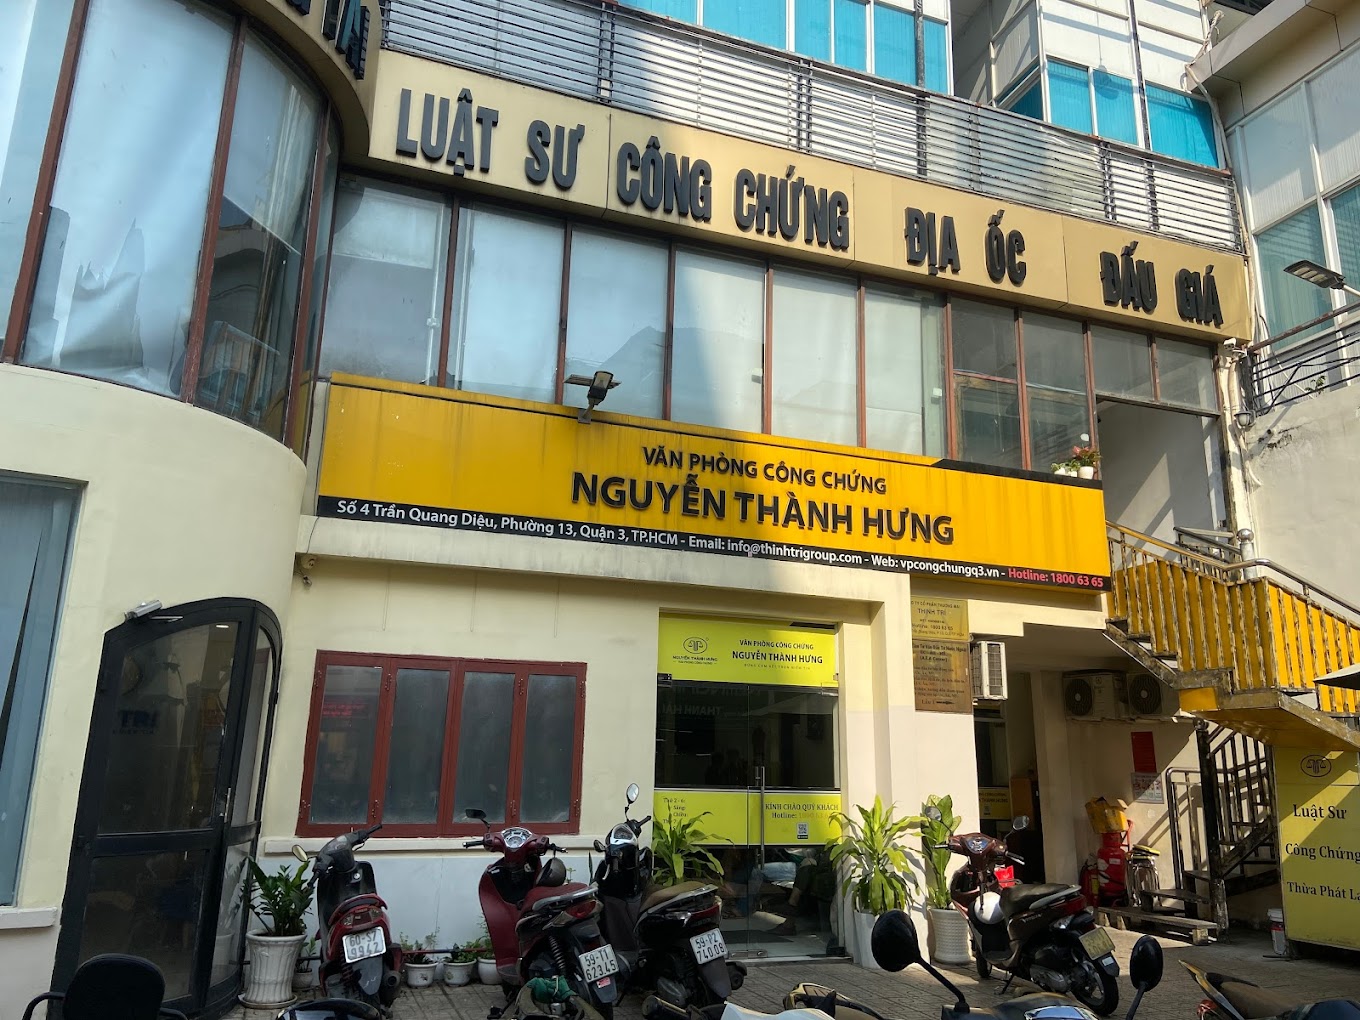 Liên hệ Văn phòng công chứng Nguyễn Thành Hưng thông tin địa chỉ số điện thoại